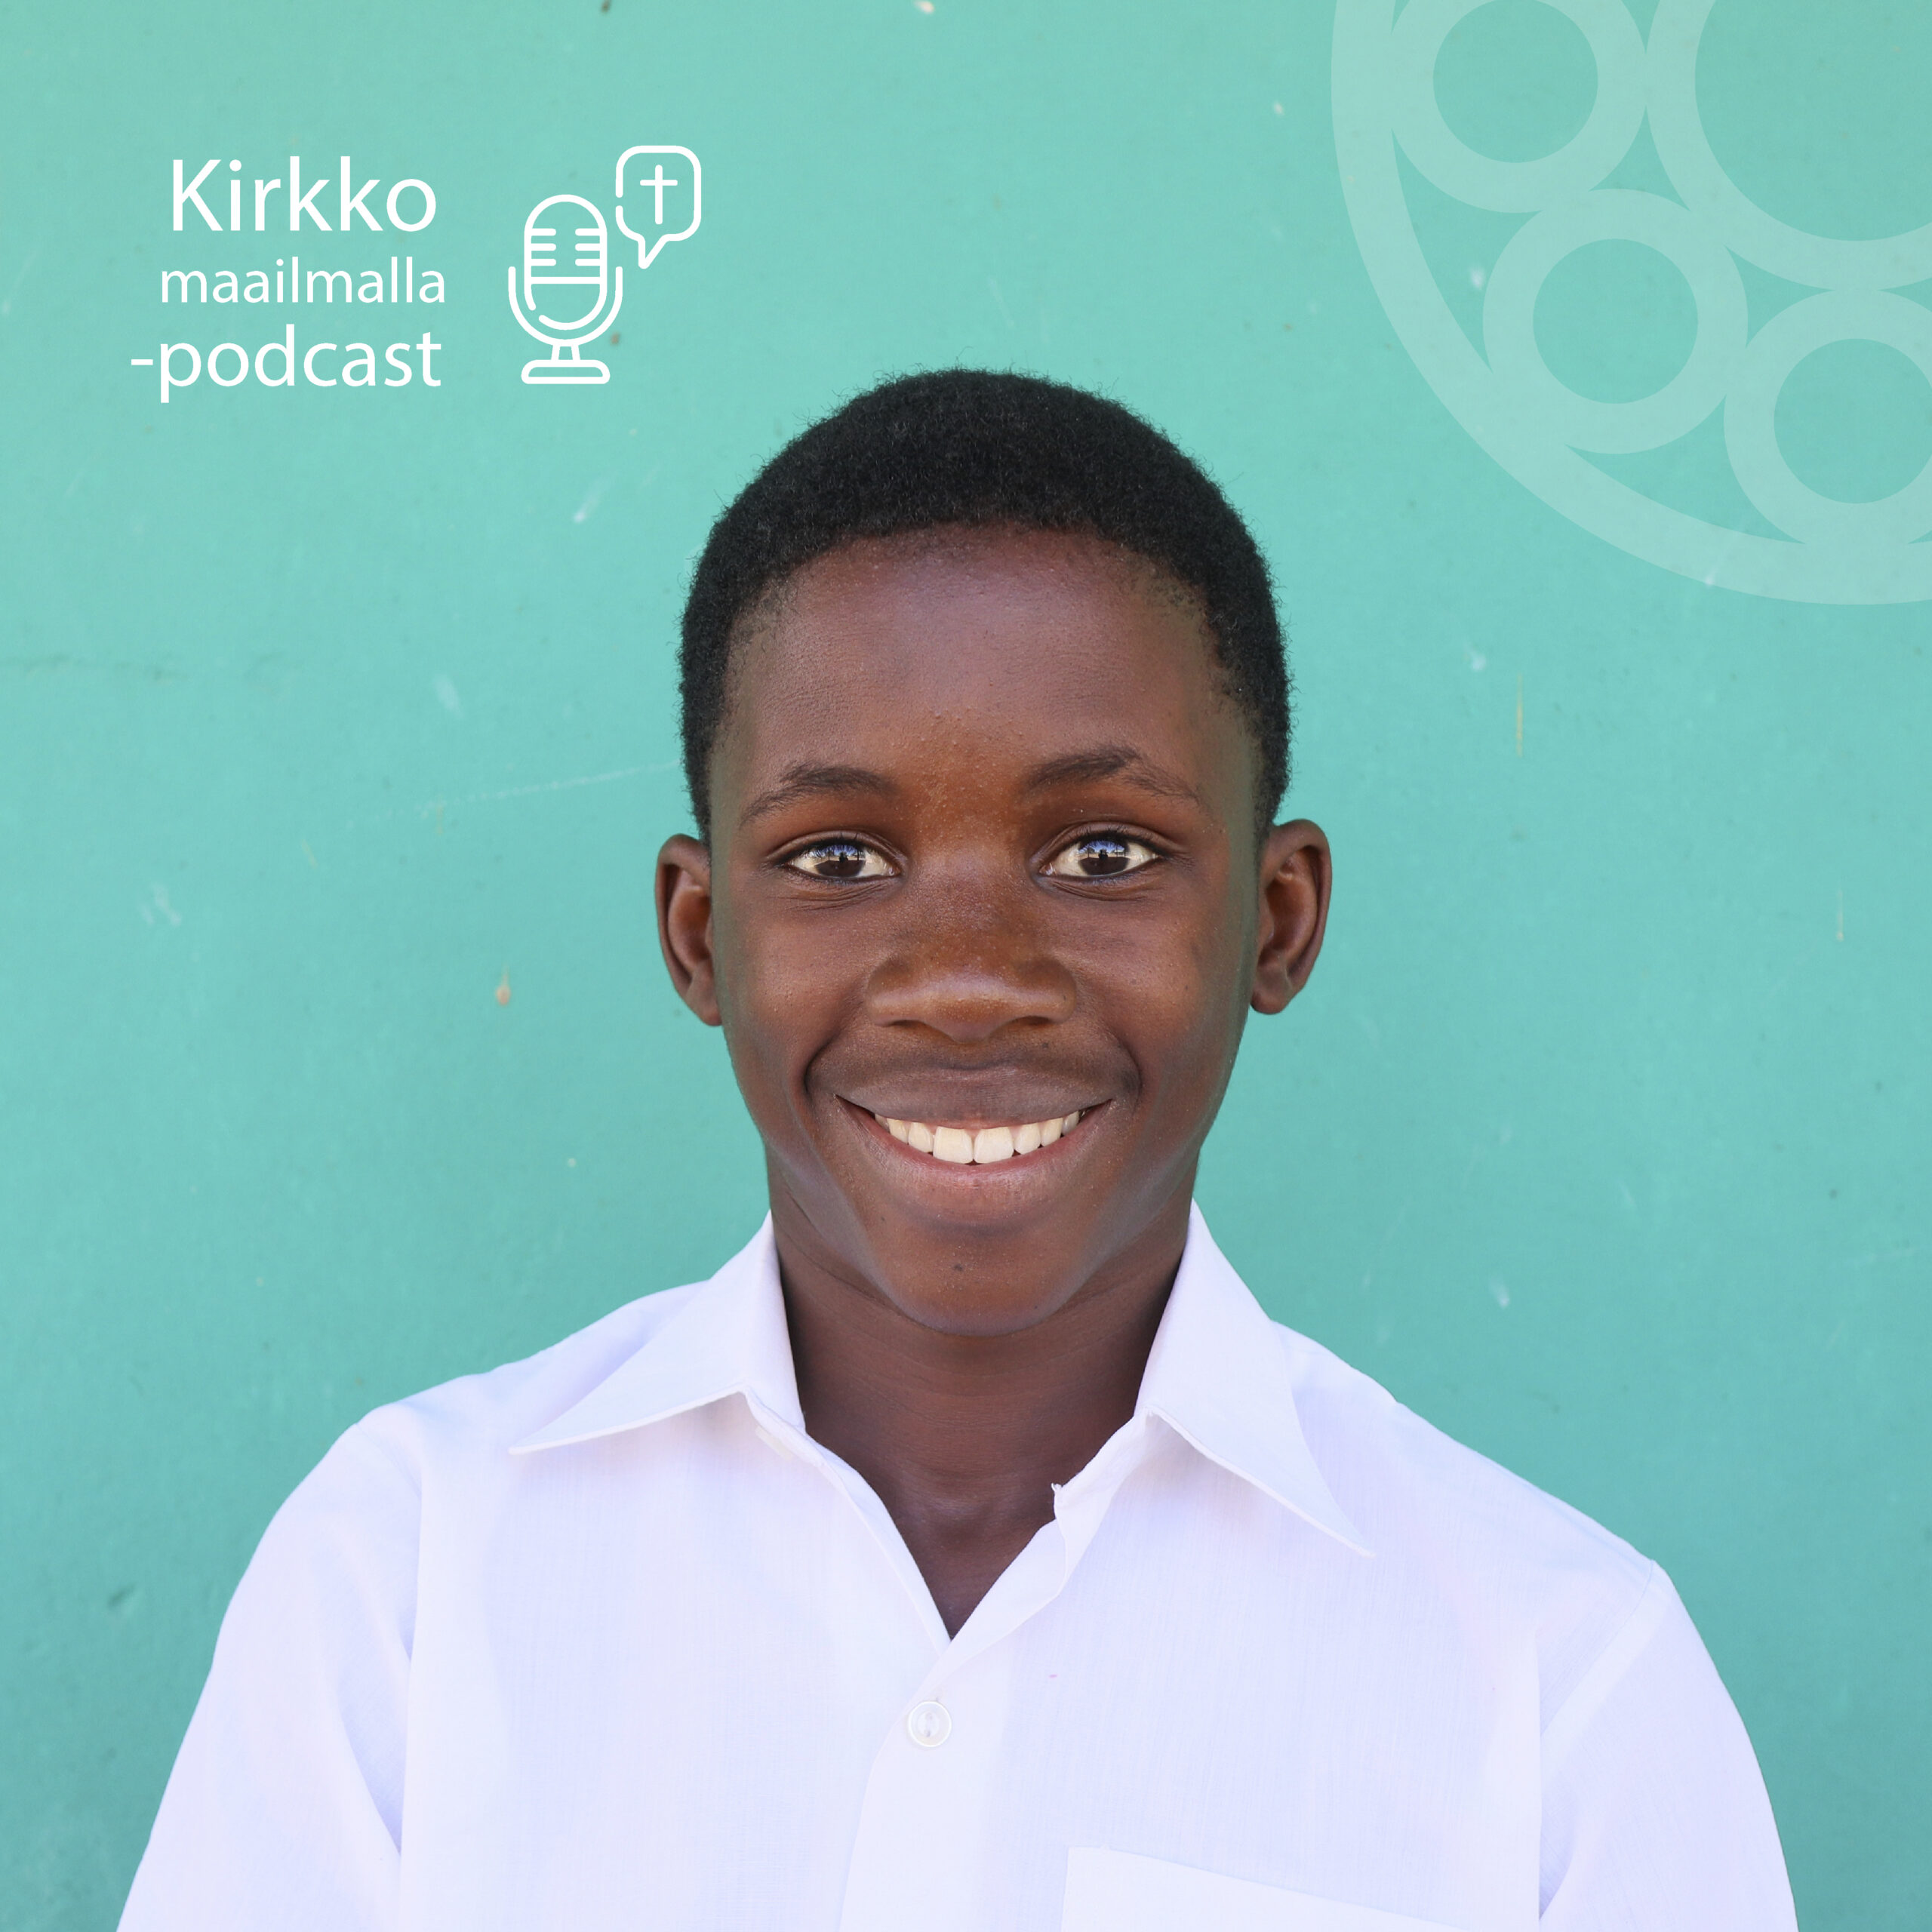 15-vuotias Martinus käy Marthin Luther koulua Angolassa.